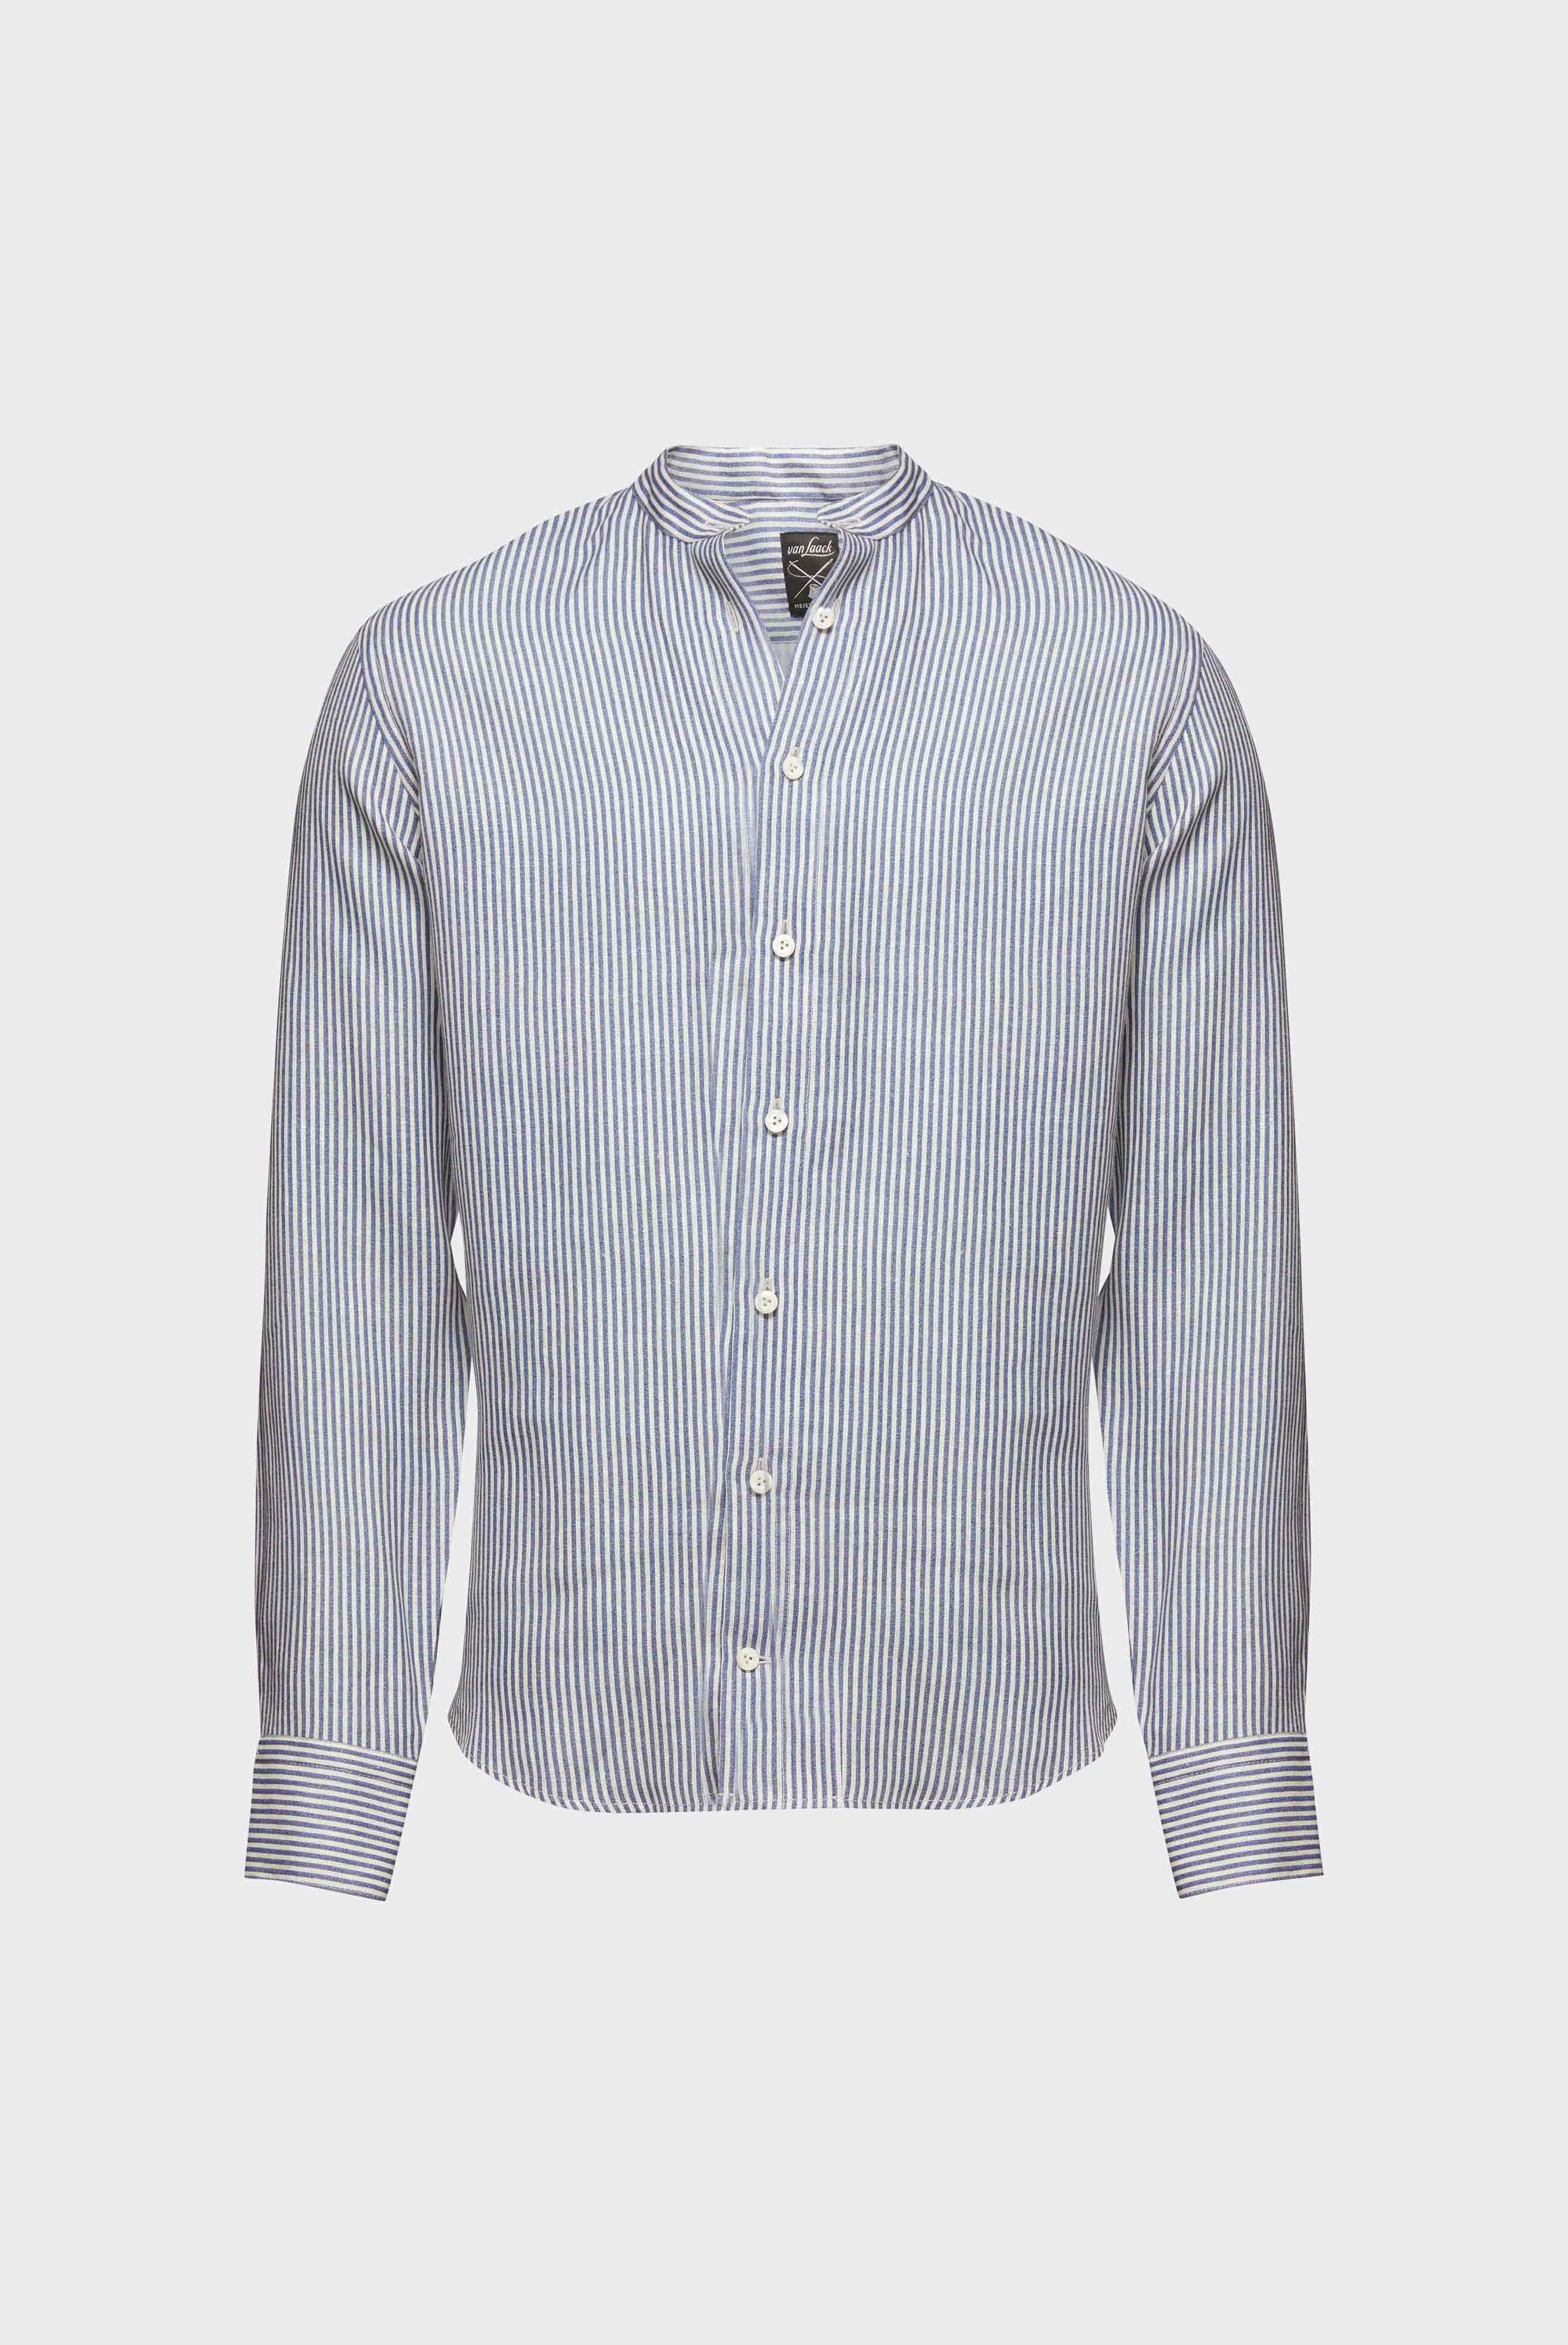 Casual Hemden+Leinenhemd mit Streifen-Druck Tailor Fit+20.2041.9V.170355.761.38